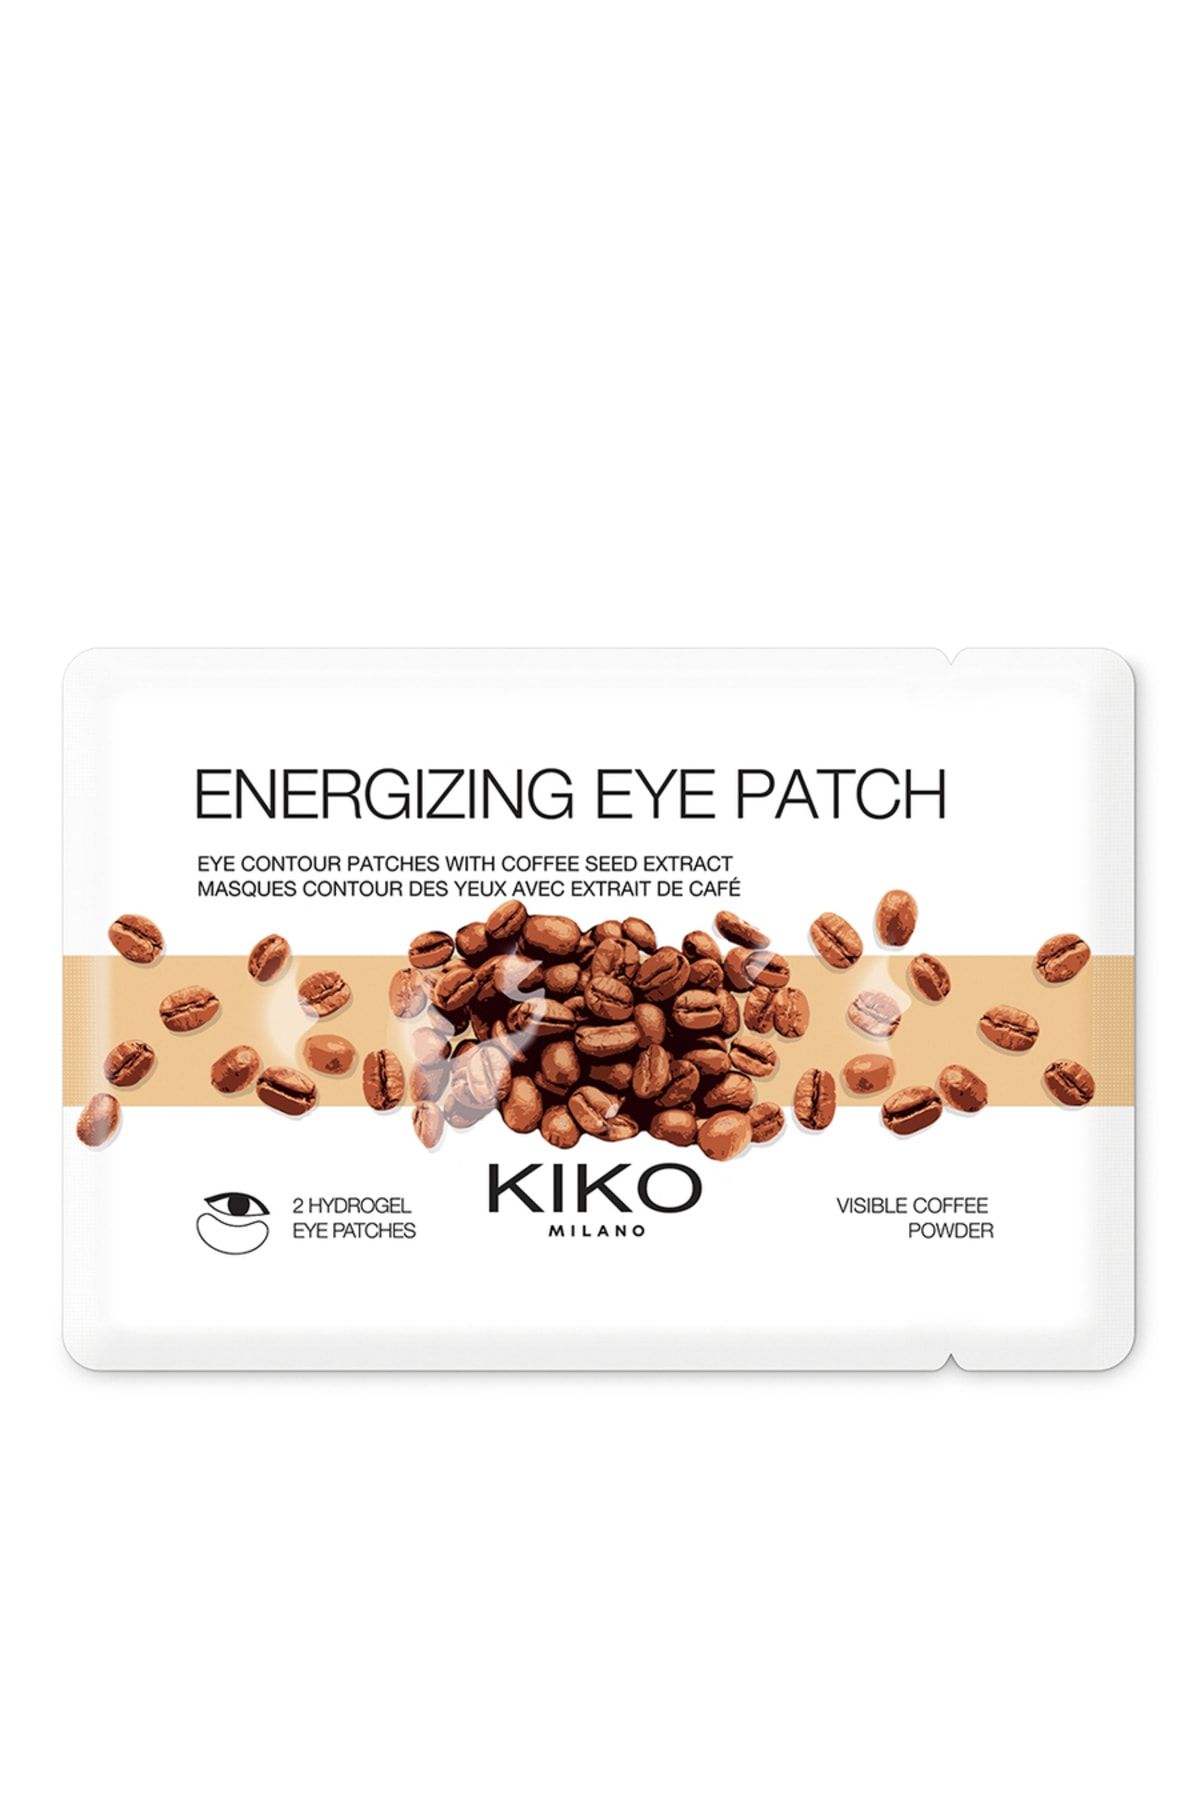 KIKO Enerji Verici Göz Maskesi - Energizing Eye Patch